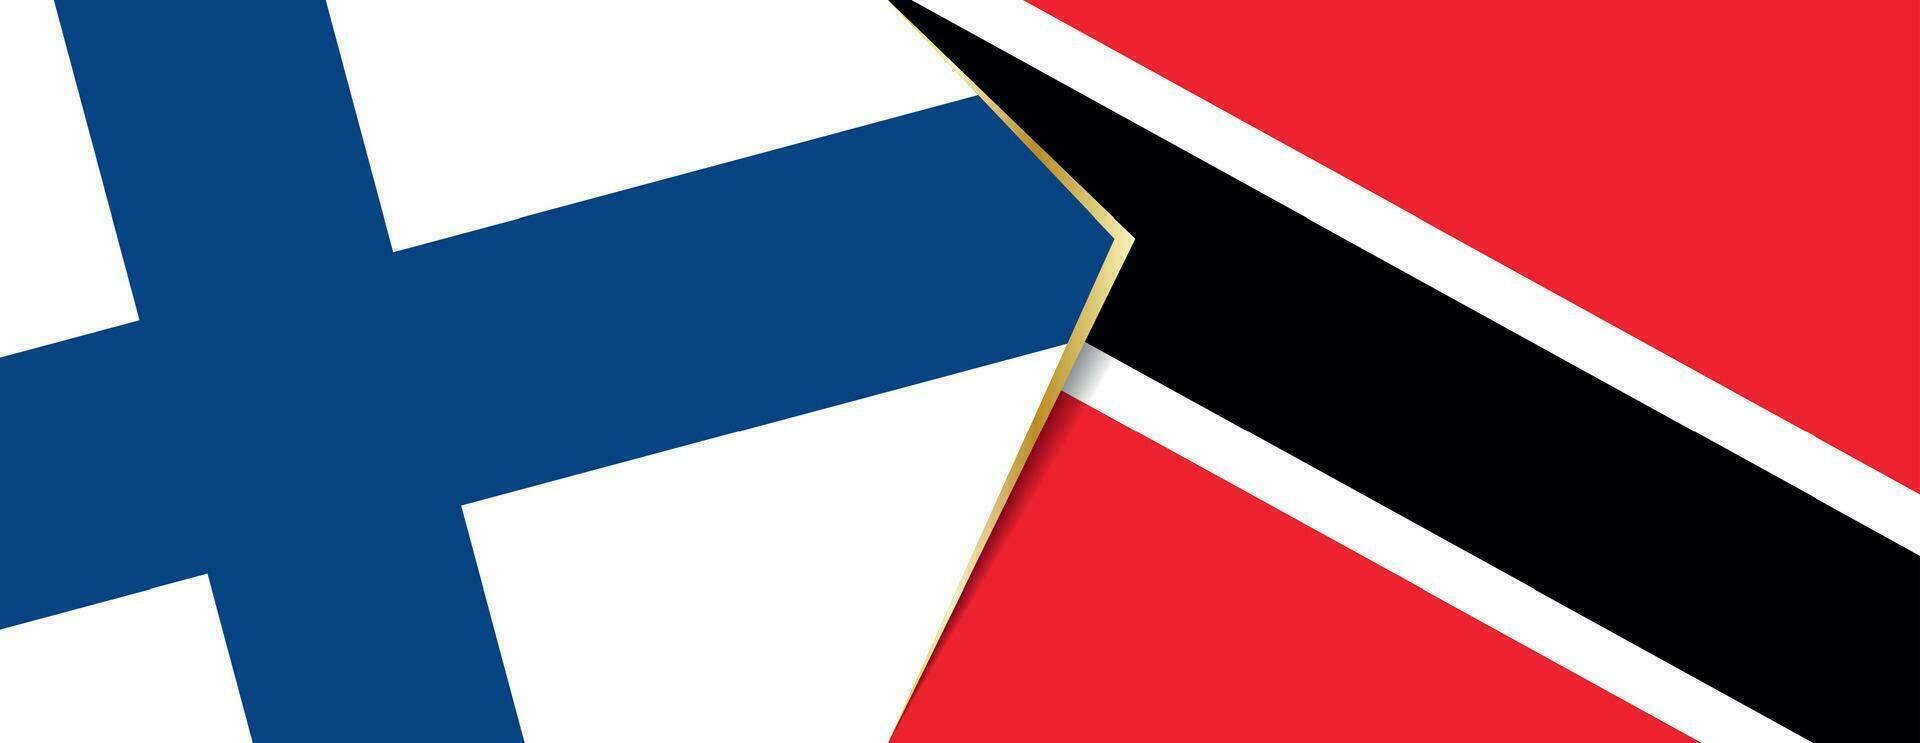 Finlandia y trinidad y tobago banderas, dos vector banderas